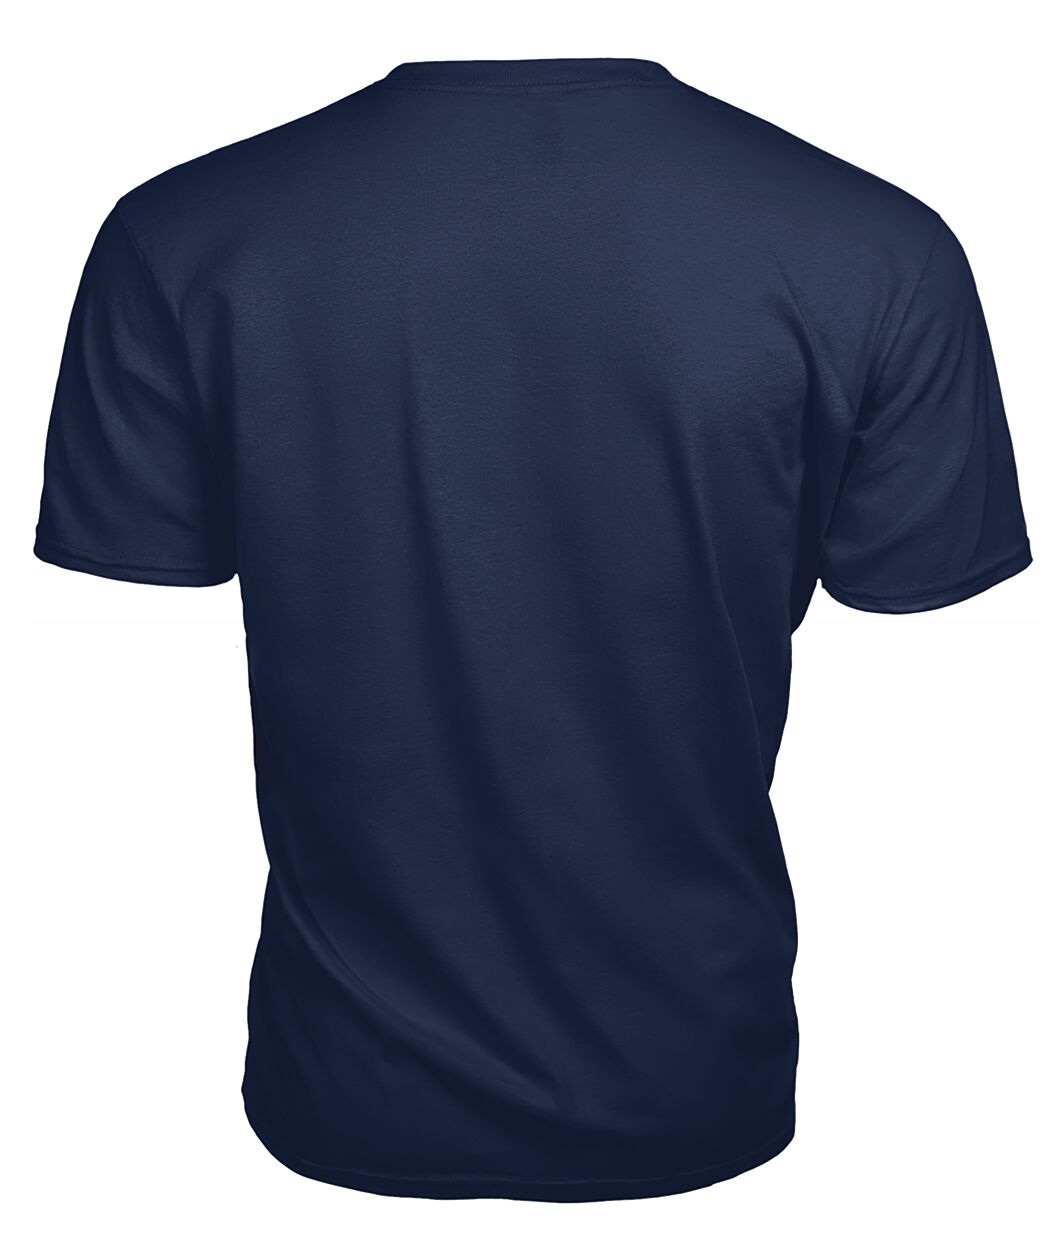 Charteris Family Tartan - 2D T-shirt